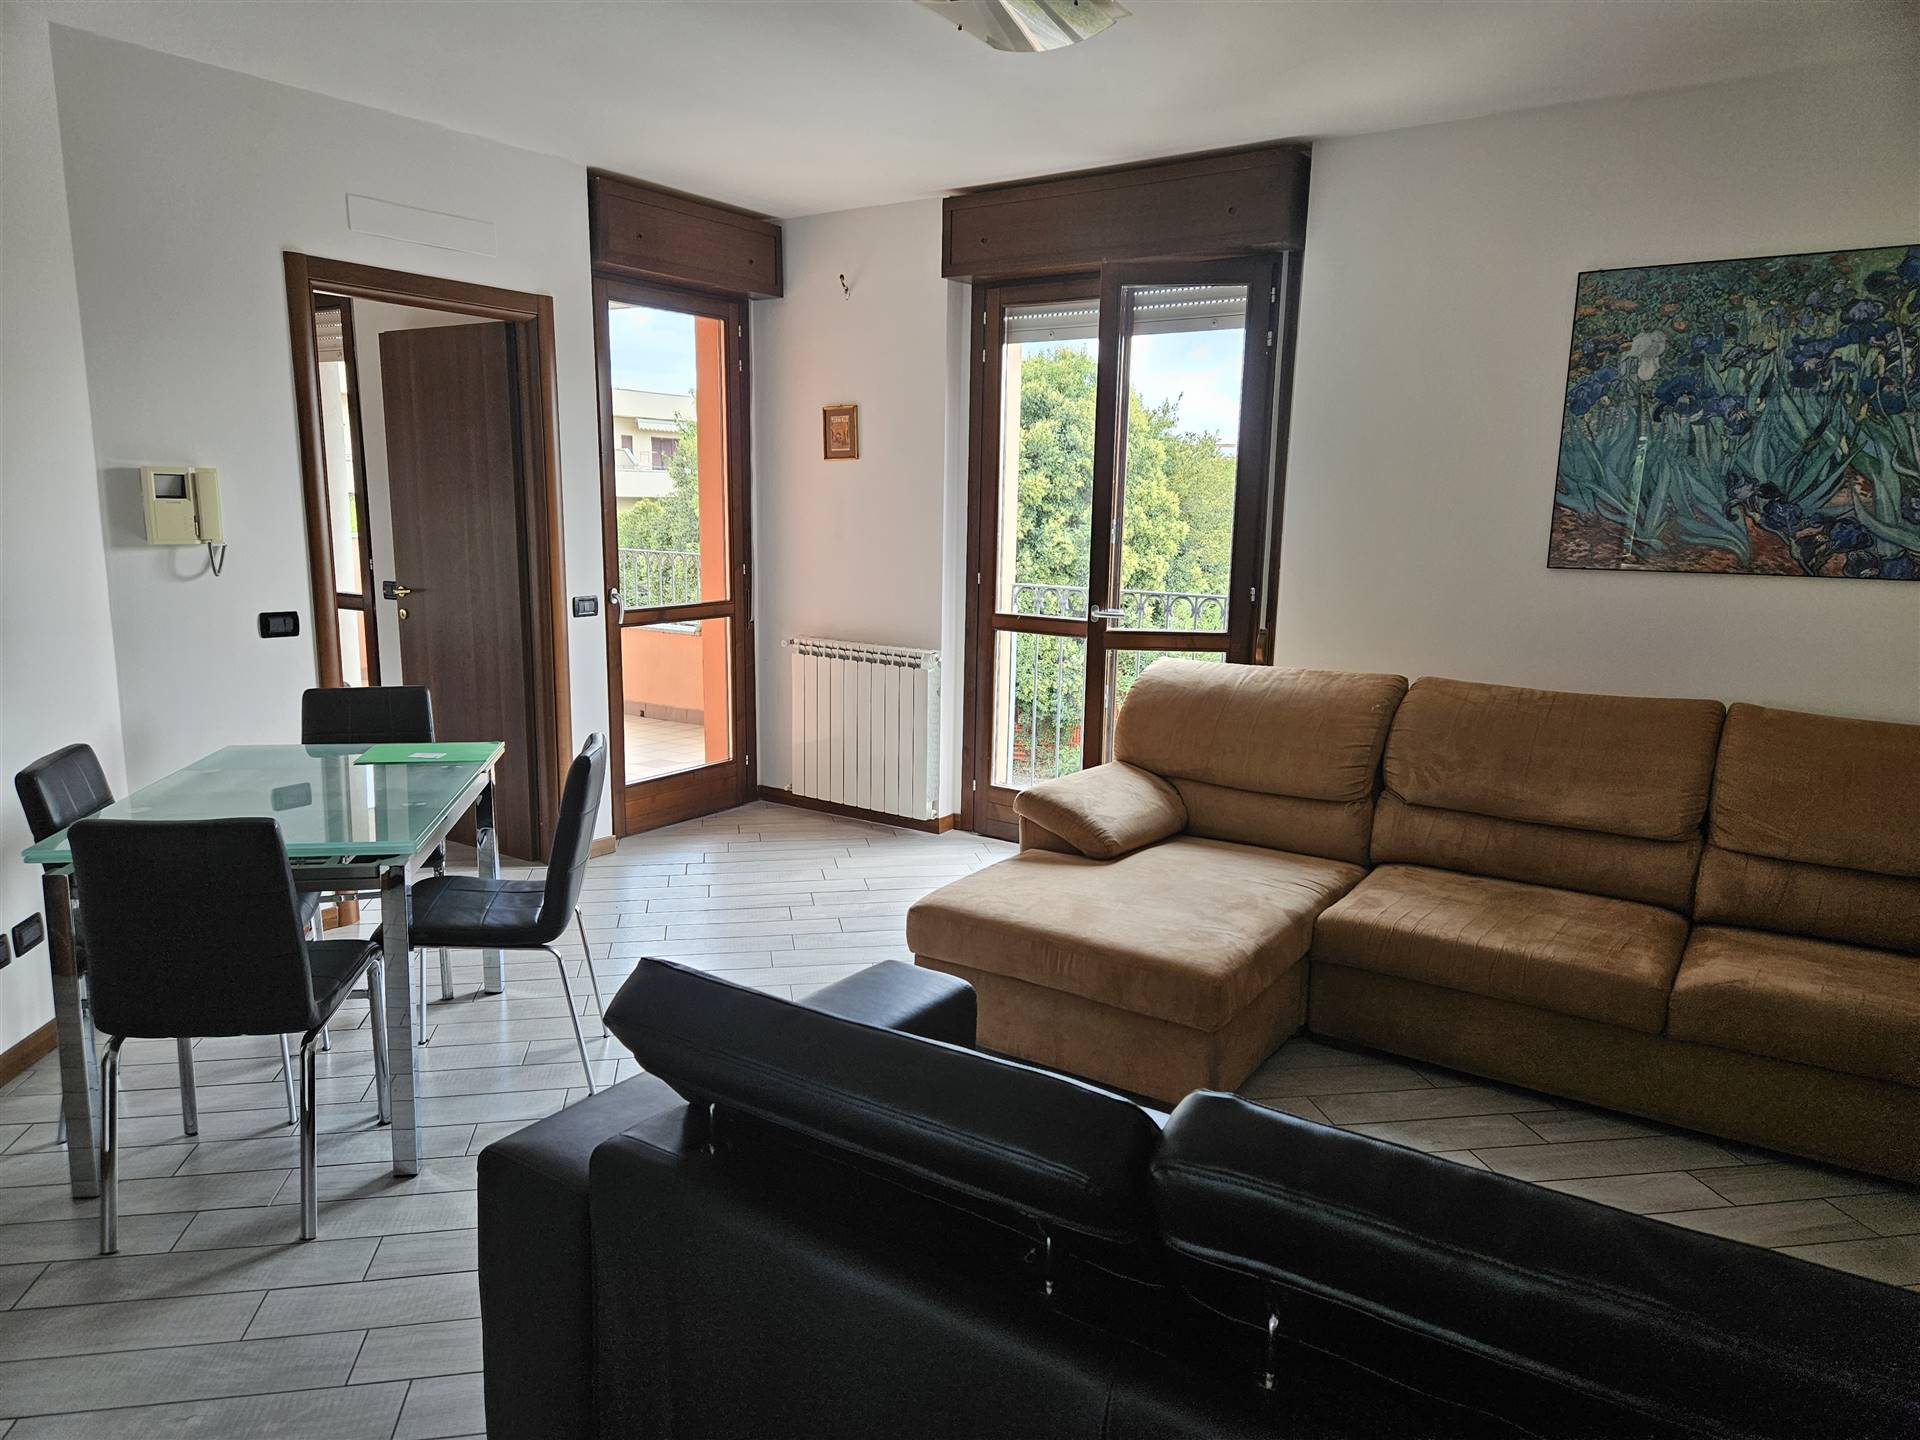 Appartamento in vendita a Bernareggio, 3 locali, prezzo € 215.000 | PortaleAgenzieImmobiliari.it